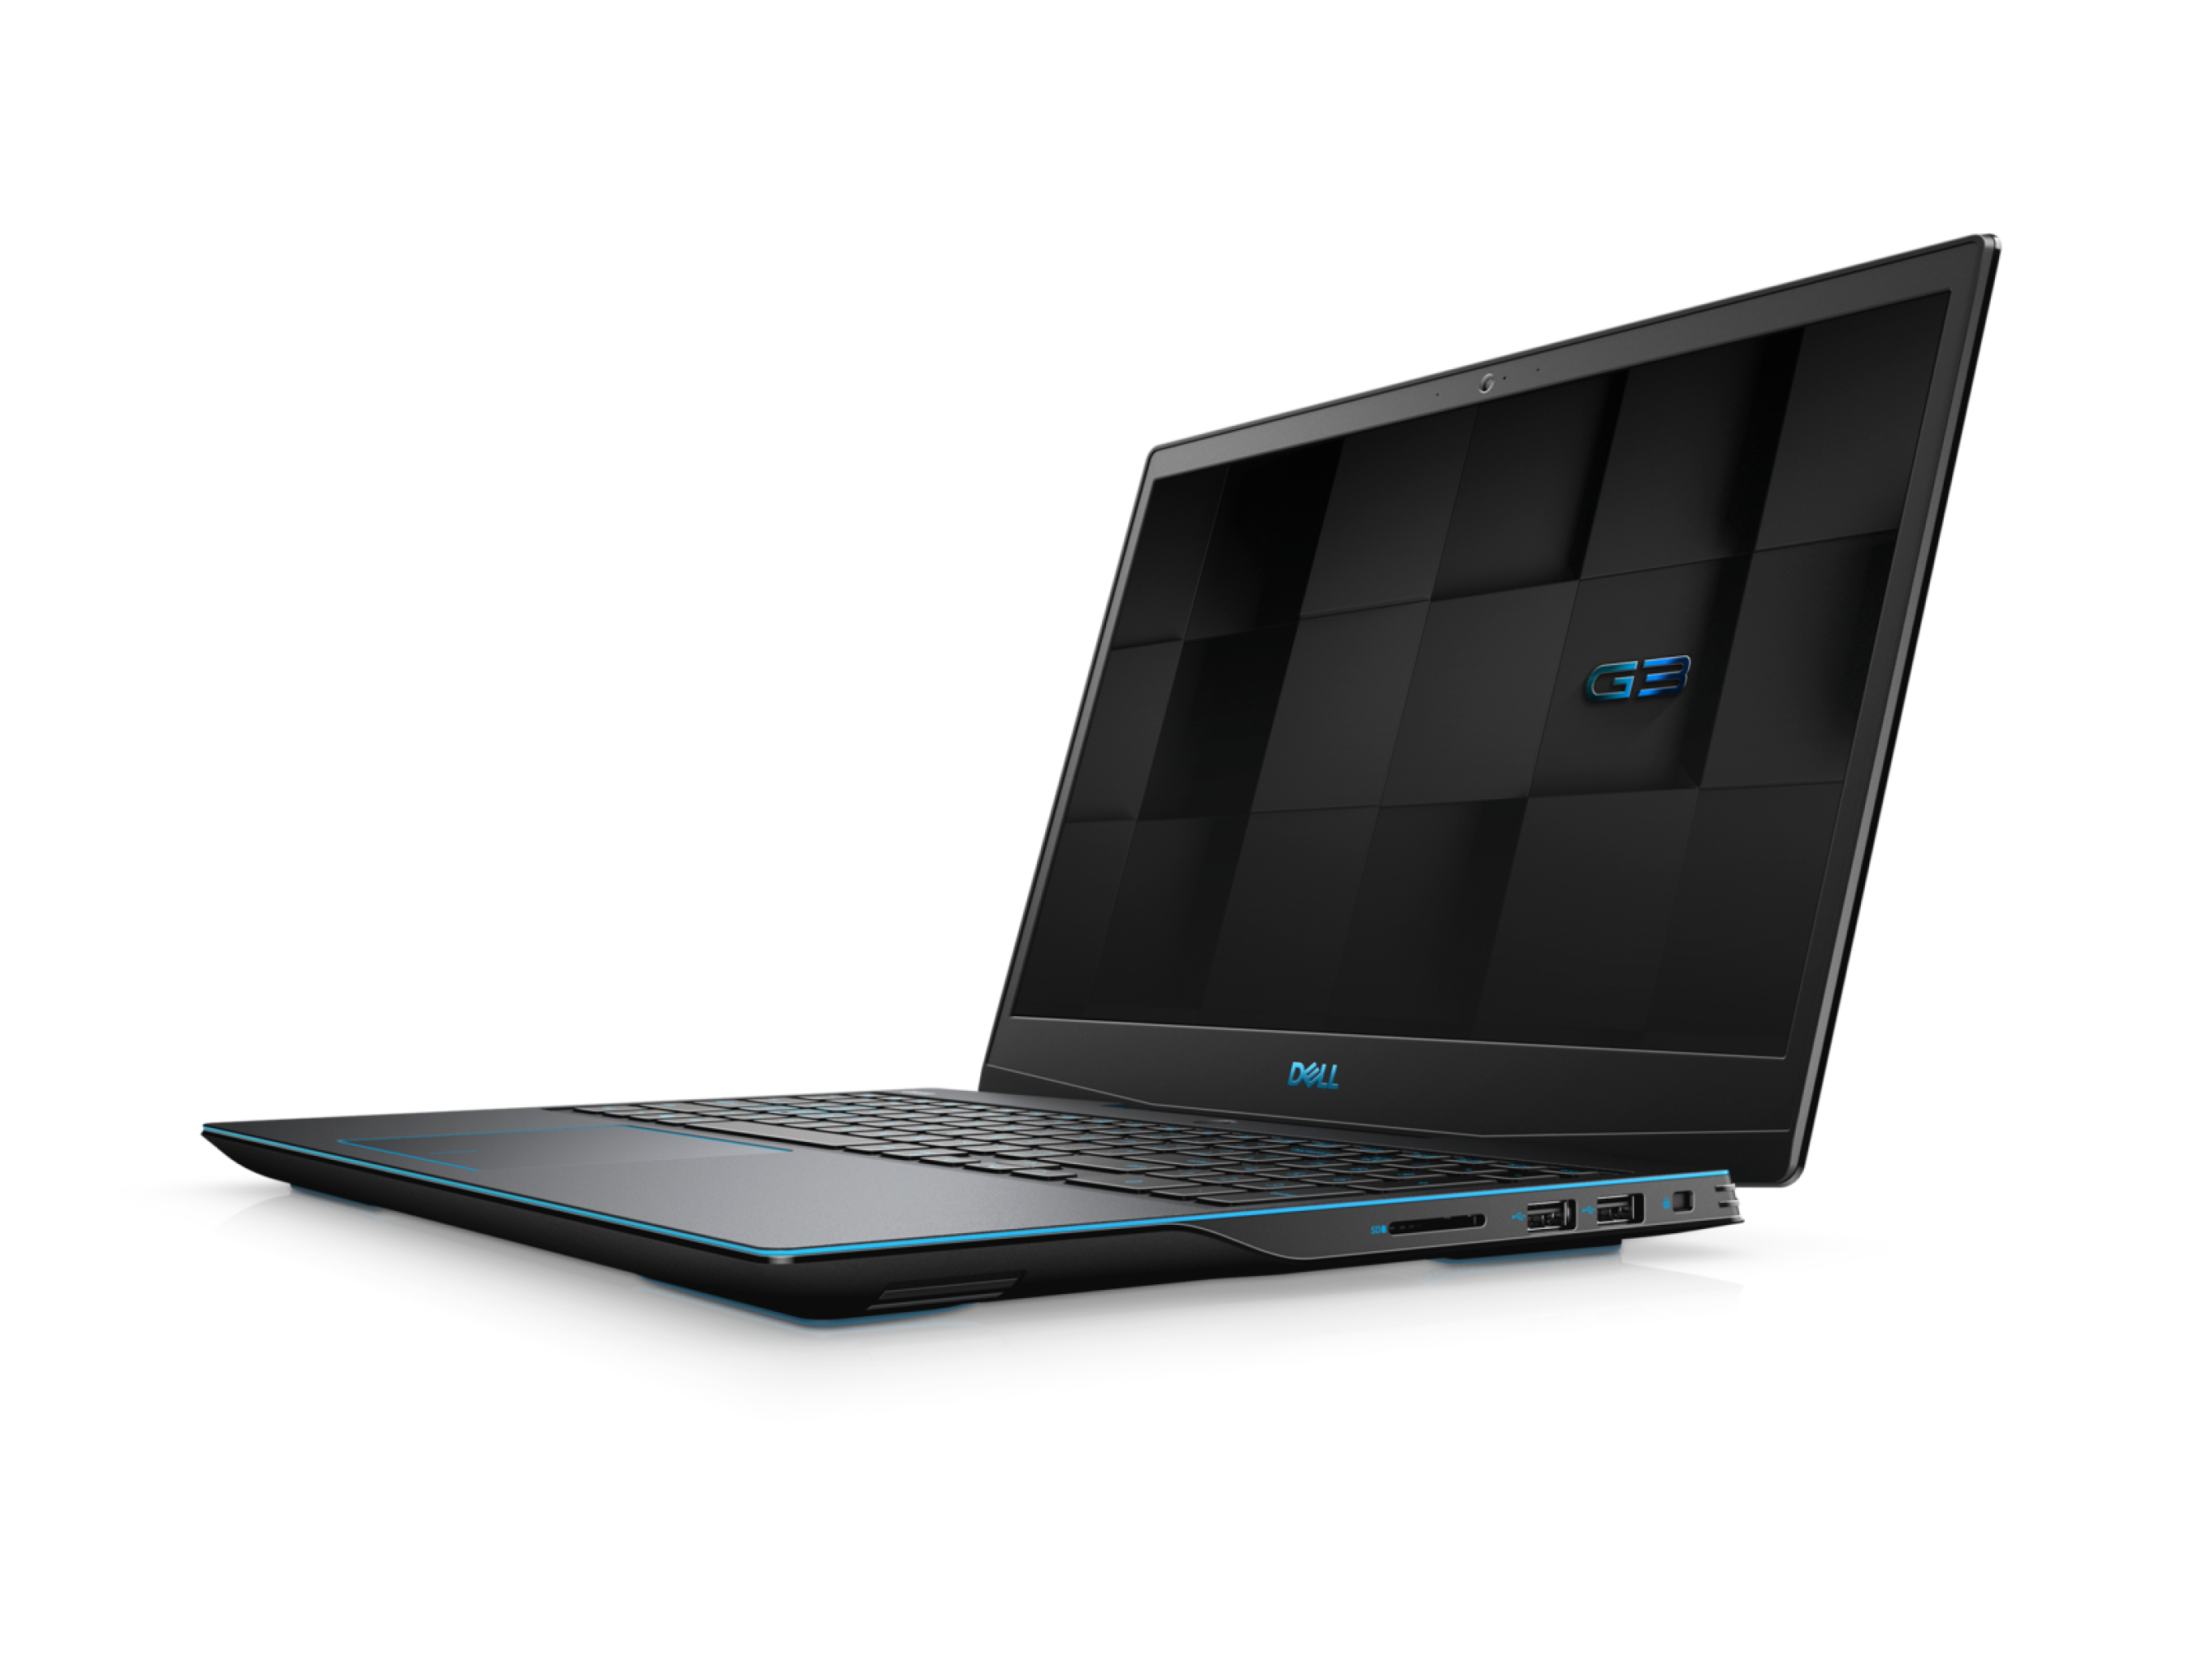  قیمت لپ تاپ Dell 15 G3 3590 با پردازنده Core i7 9750H | لاکچری لپ تاپ 